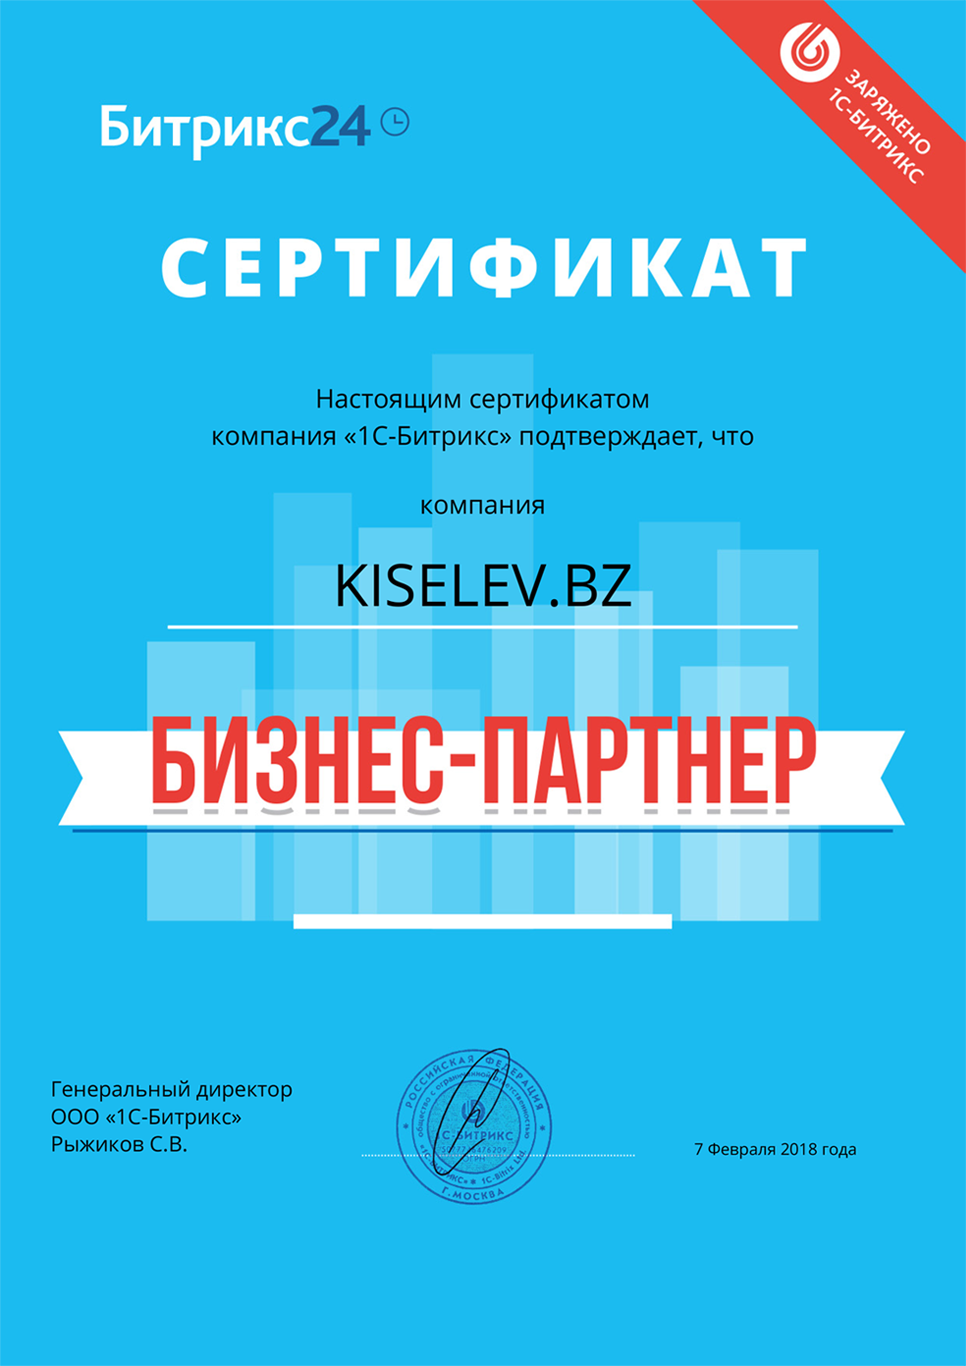 Сертификат партнёра по АМОСРМ в Новохоперске